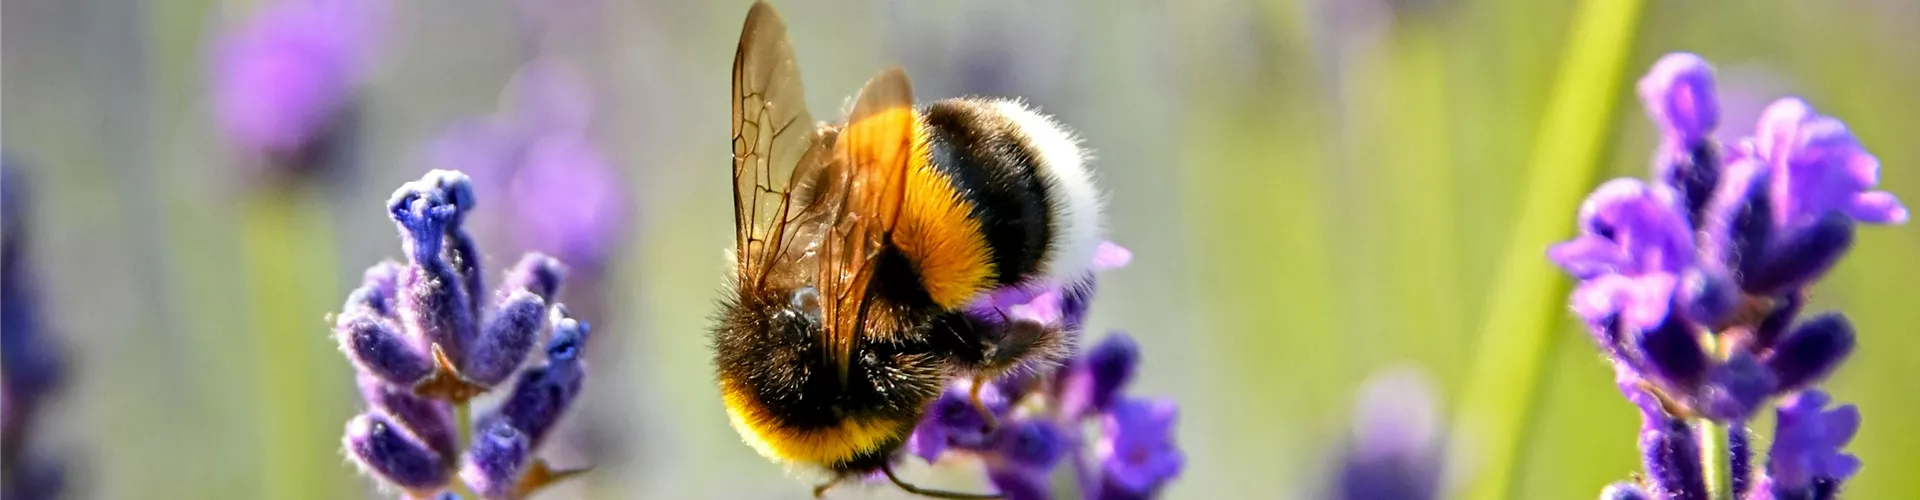 Bienen und Insekten - Bellaflora